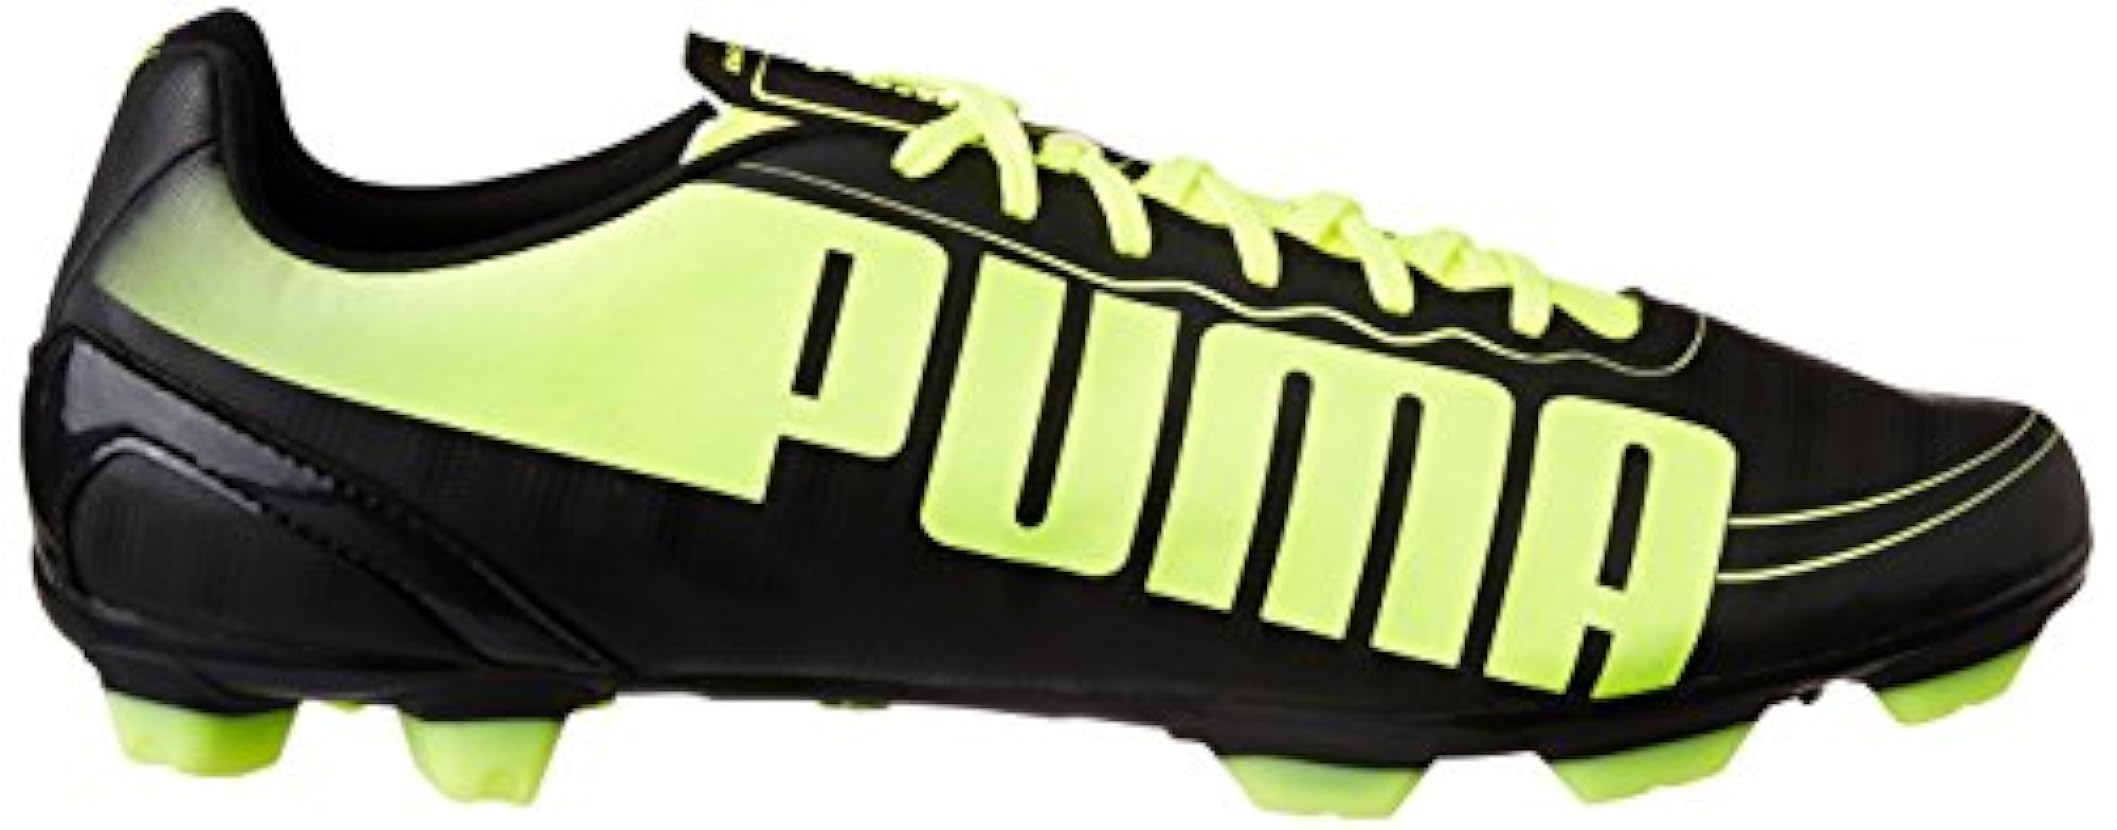 Puma Evospeed 5.2 FG, Scarpe da Calcio Uomo 527199133